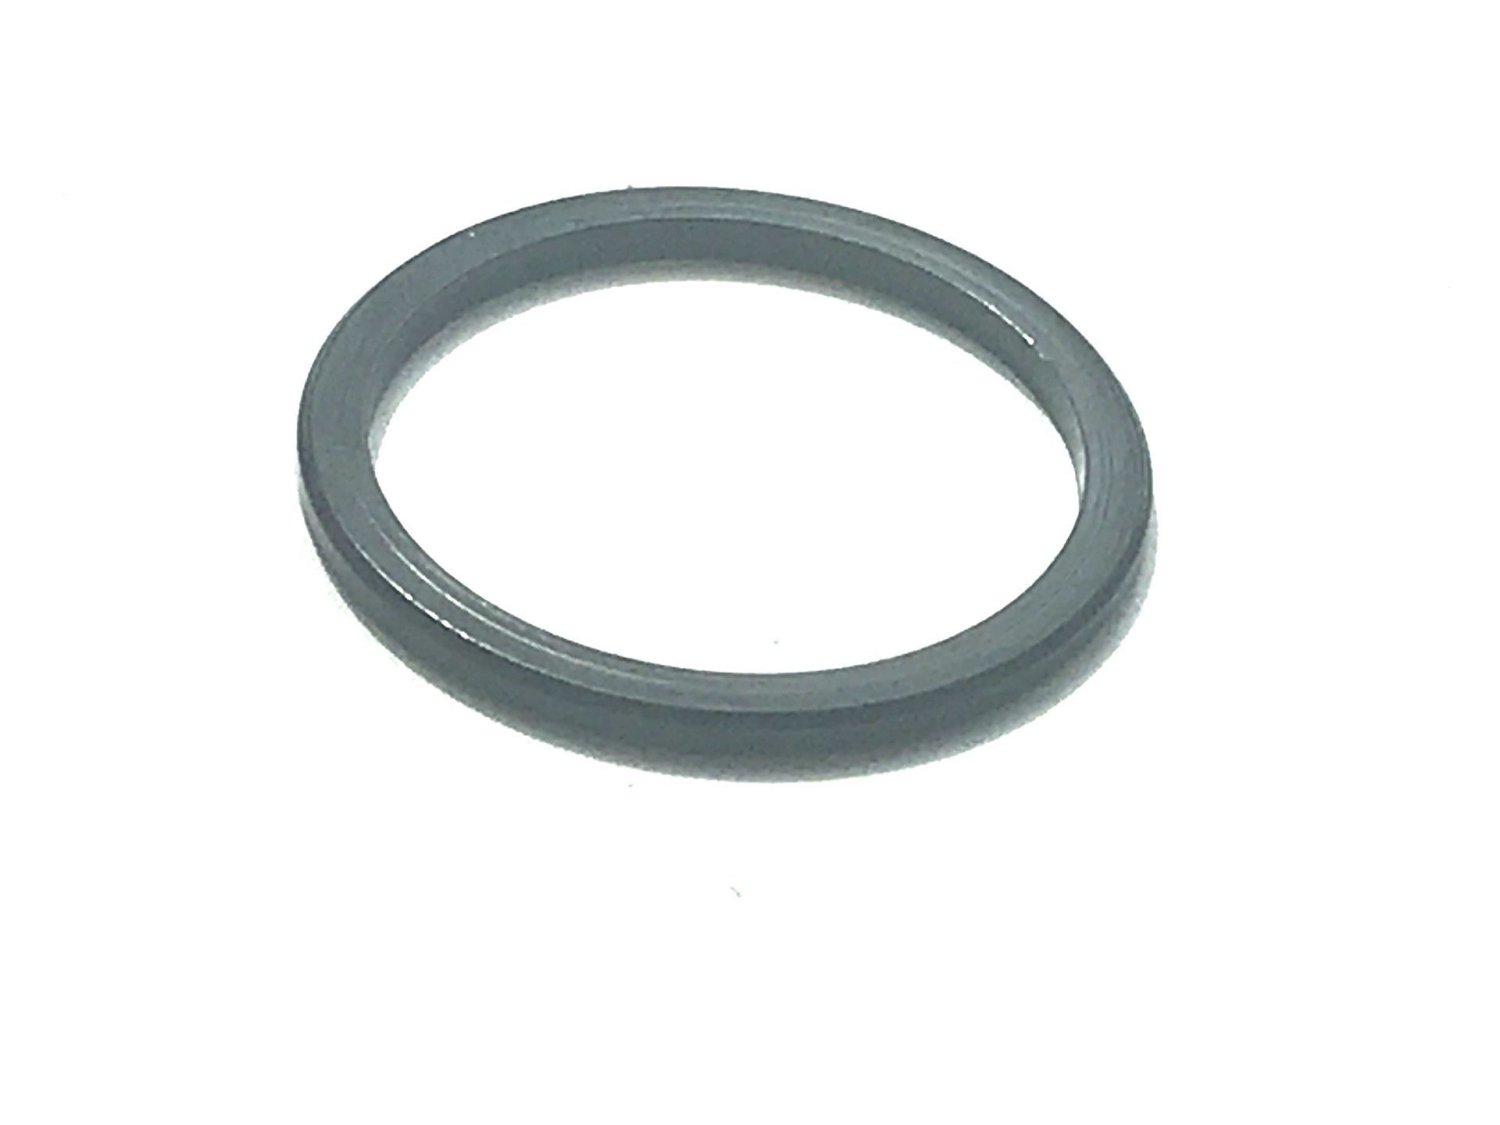 Кольцо проставочное, для сдвига каретки, толщина 2,6мм, диаметр 42/35мм, 00-170029 кольцо штуцерное epdm для обжимных фитингов 100 шт диаметр 16 мм masterprof пакет ис 131088